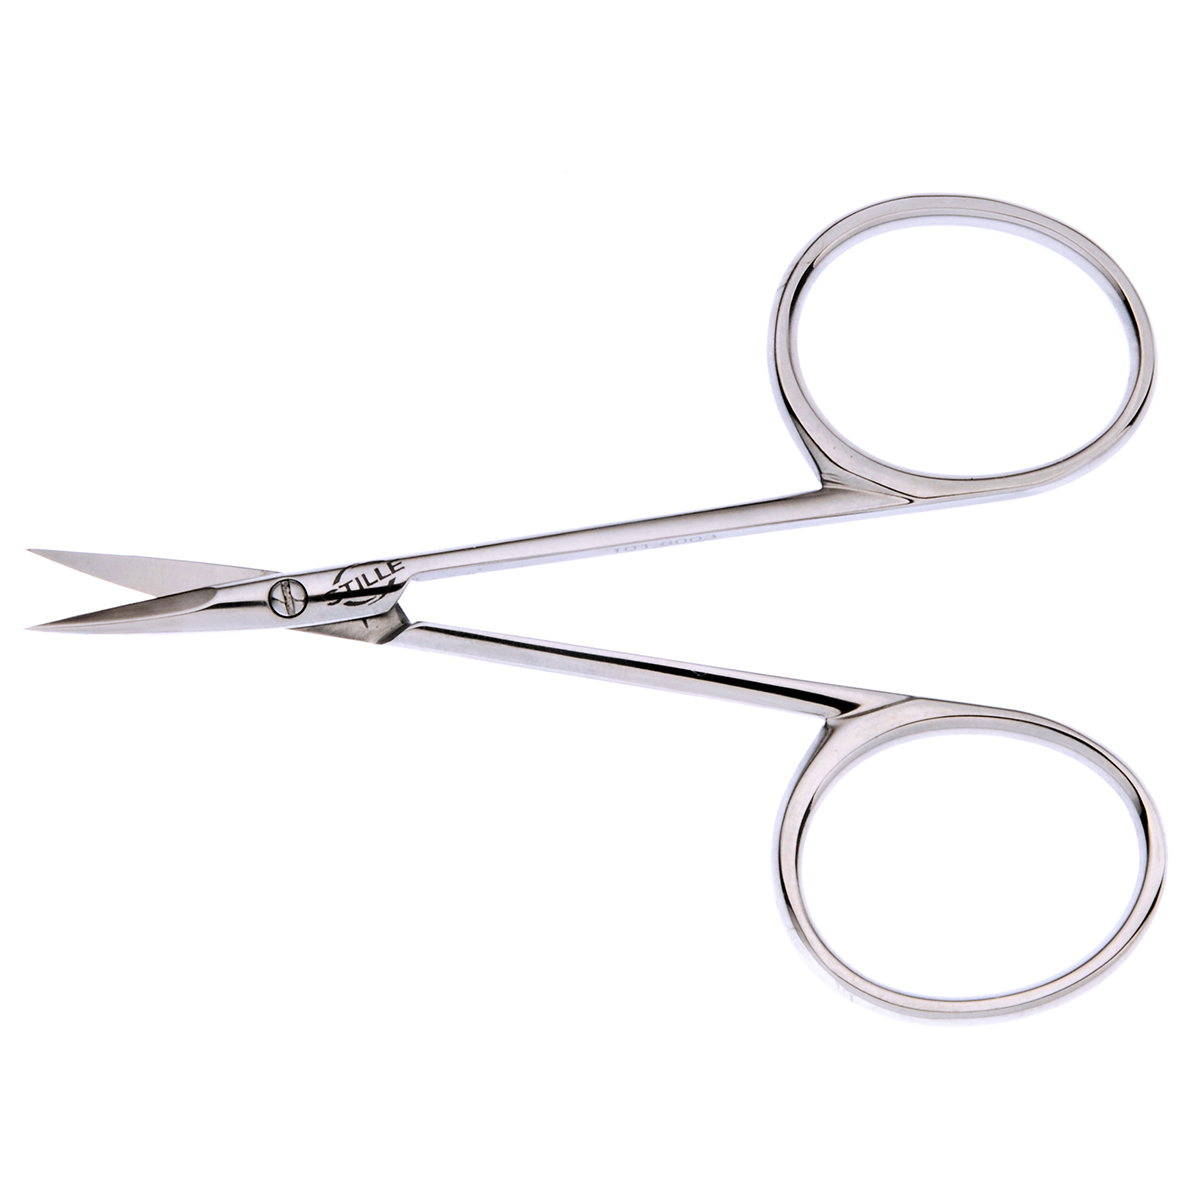 Iris Scissors Straight with Sharp Tip